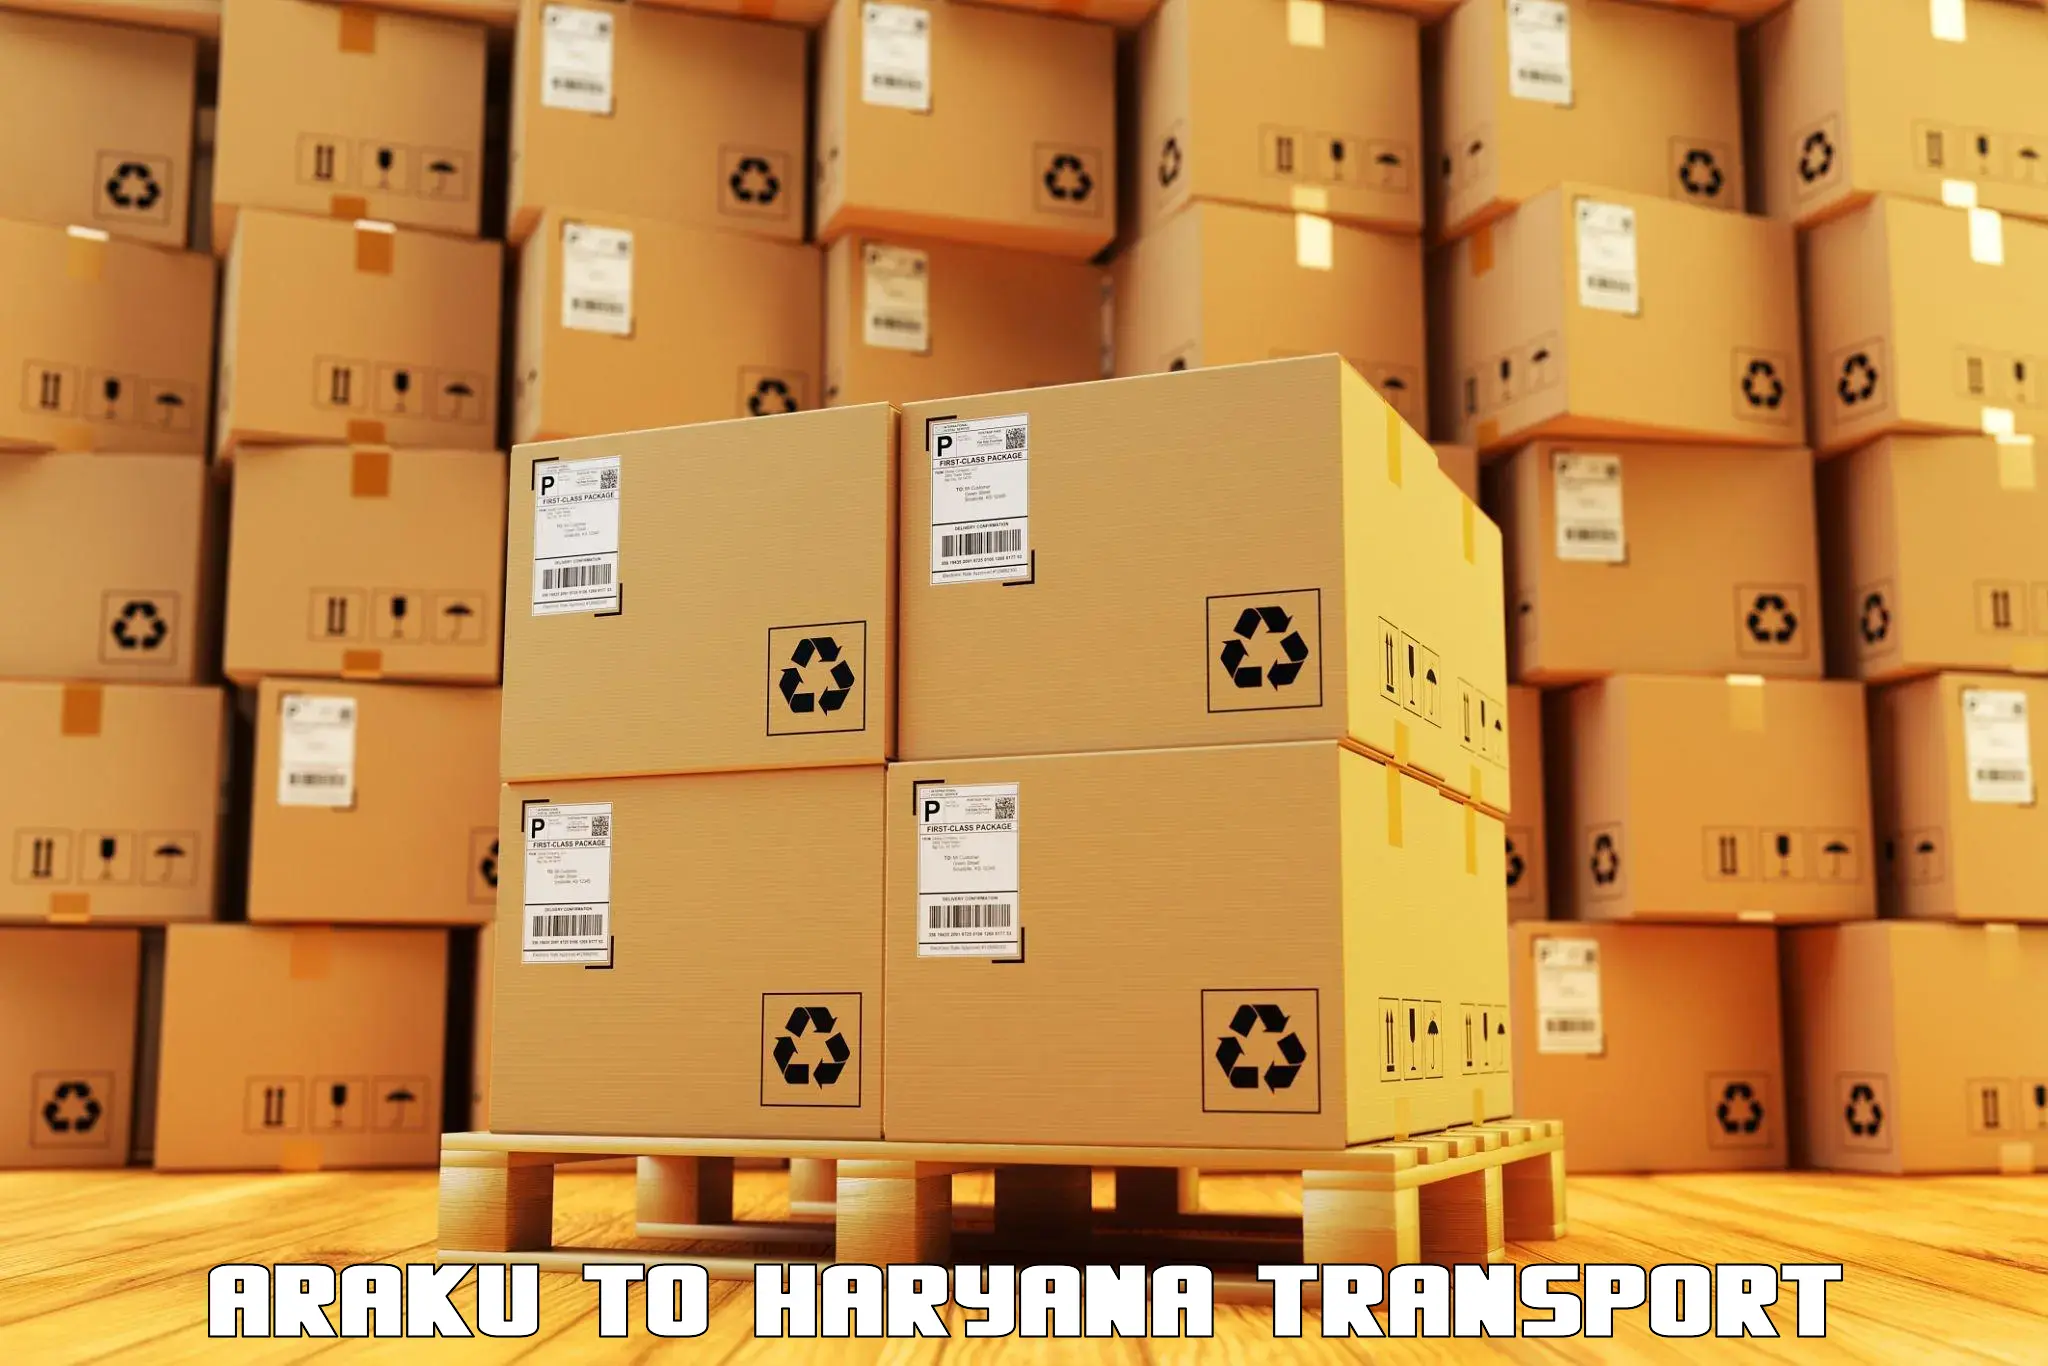 Transport in sharing in Araku to Bilaspur Haryana